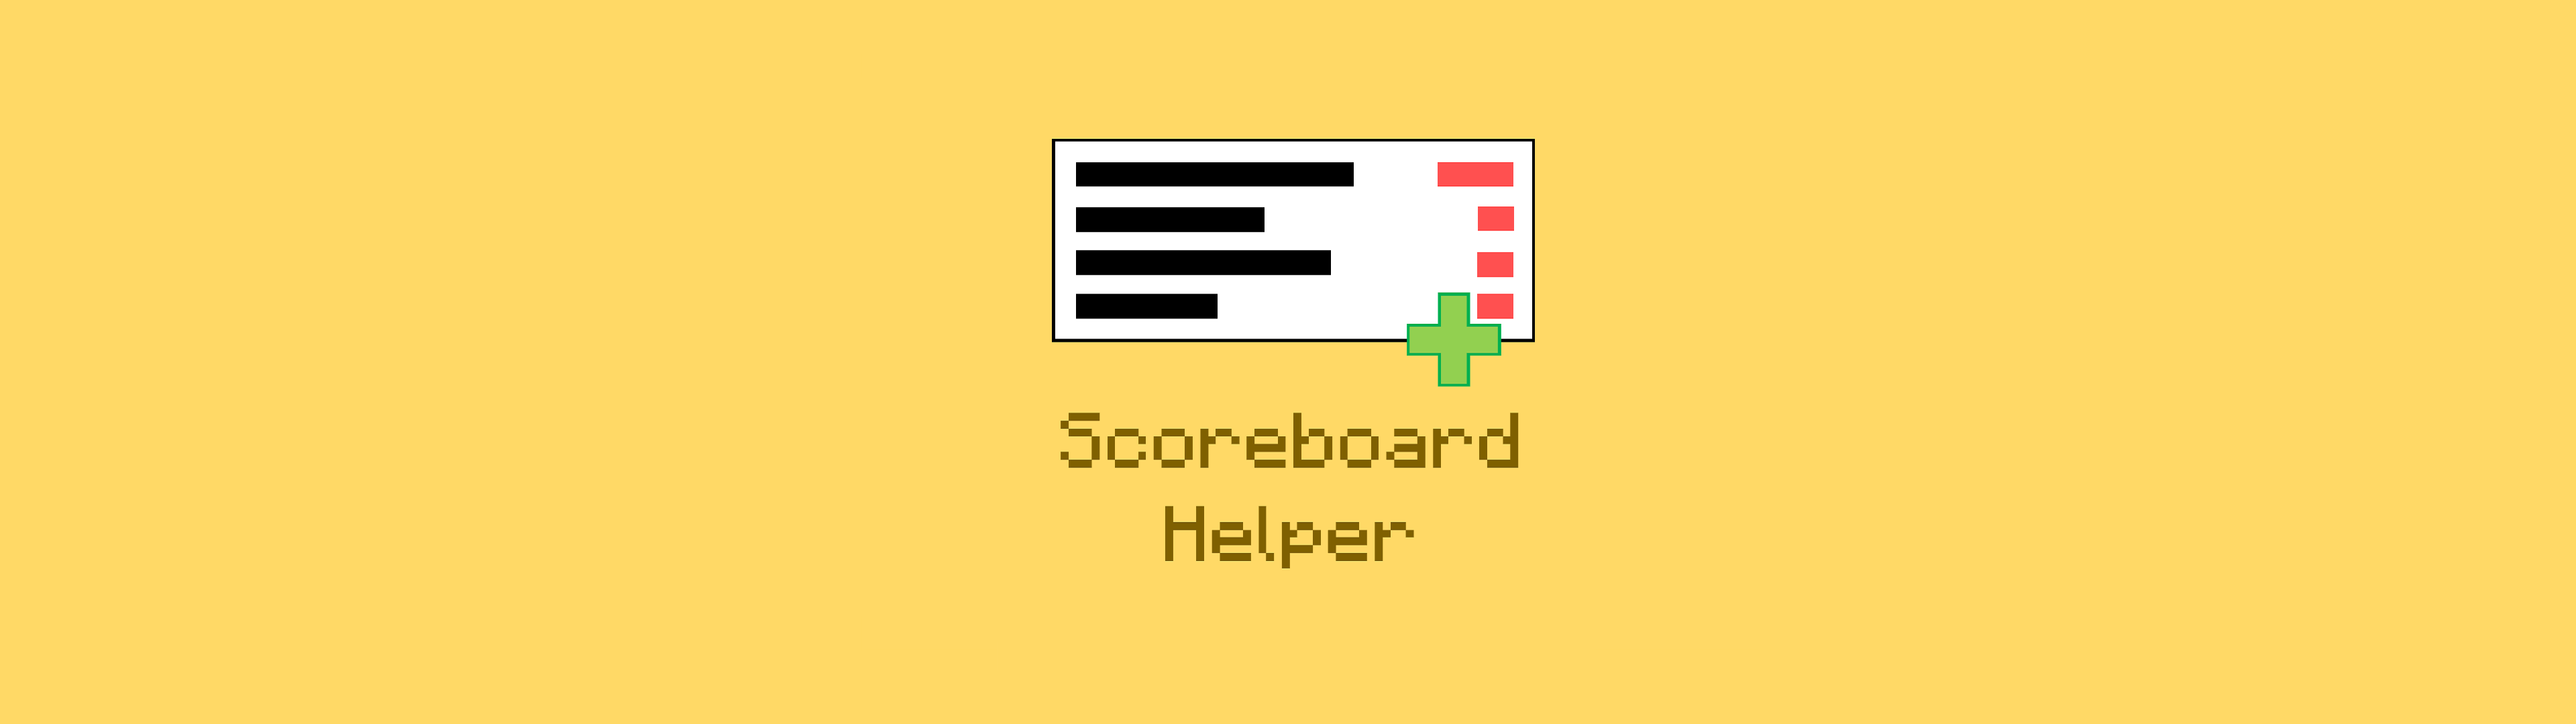 Scoreboard Helper 模组